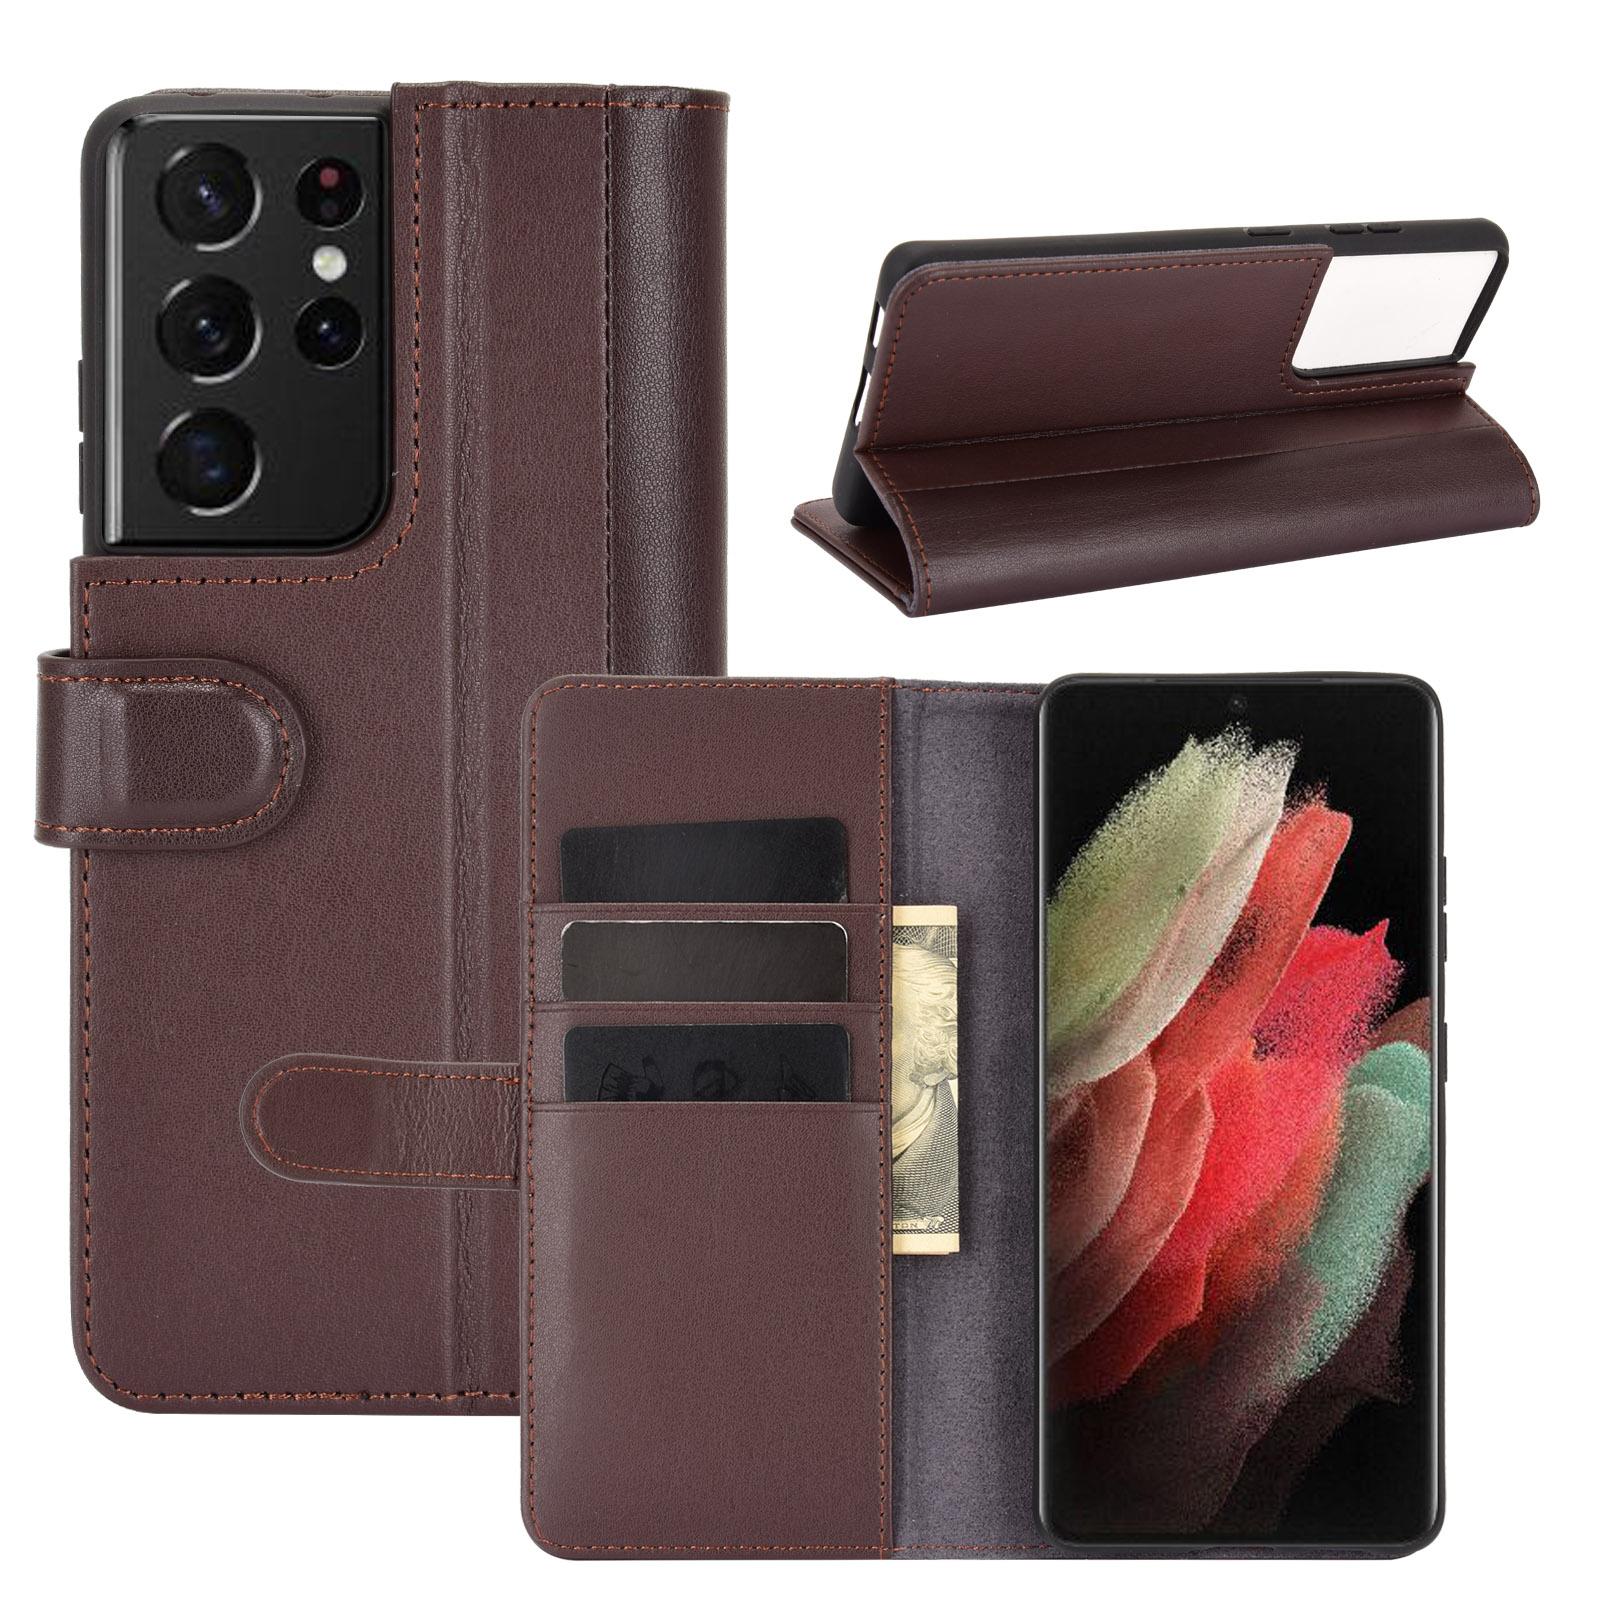 Samsung Galaxy S21 Ultra Plånboksfodral i Äkta Läder, brun